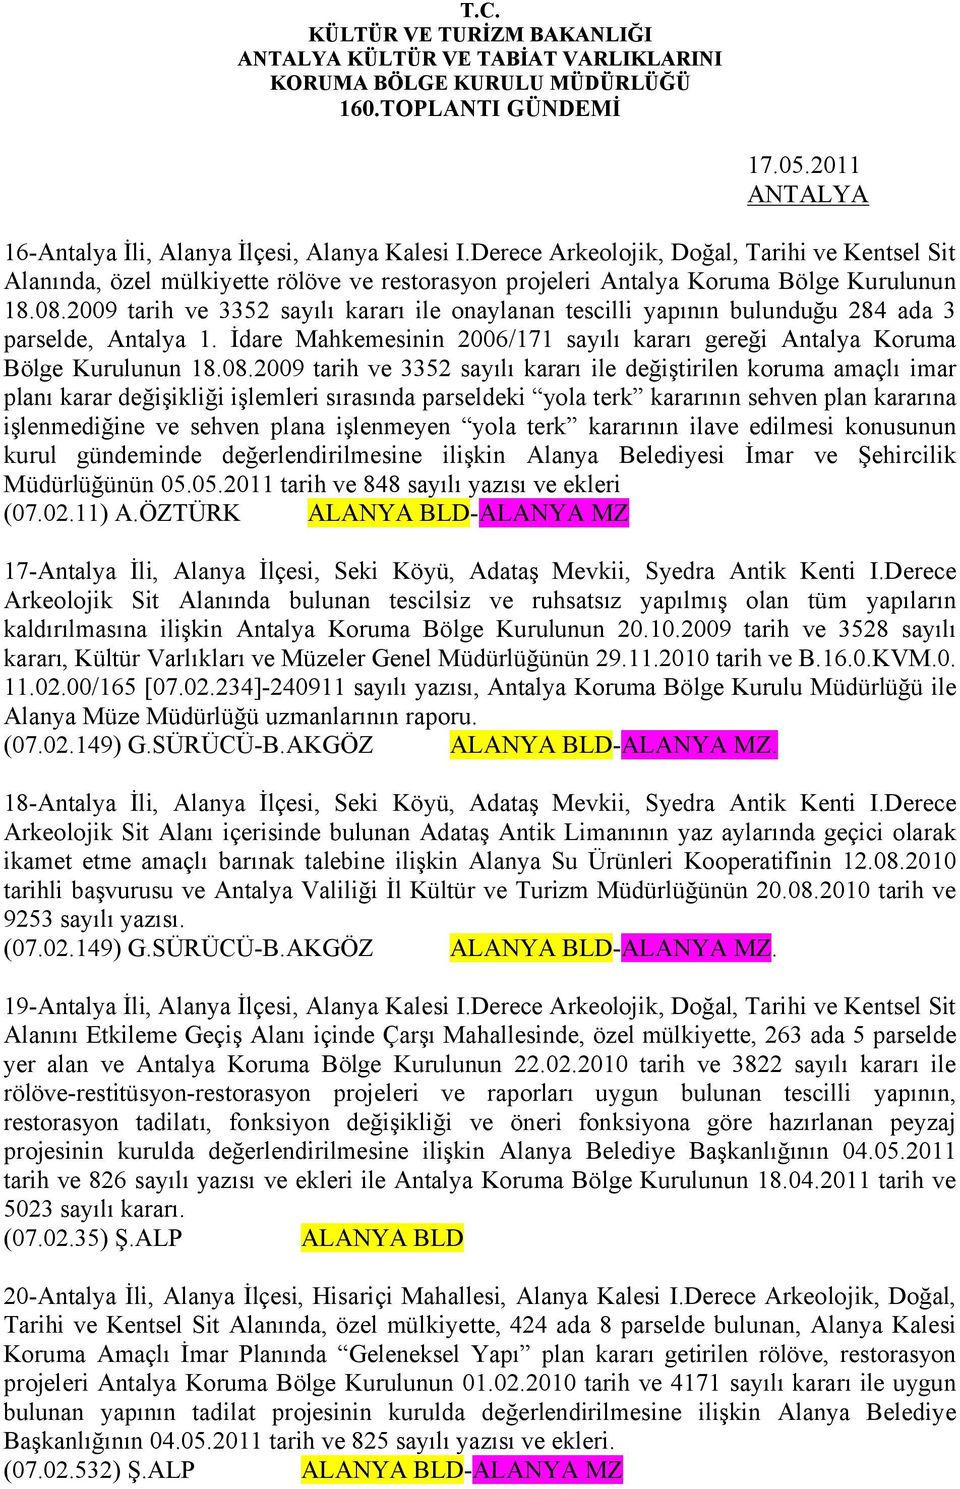 2009 tarih ve 3352 sayılı kararı ile onaylanan tescilli yapının bulunduğu 284 ada 3 parselde, Antalya 1. İdare Mahkemesinin 2006/171 sayılı kararı gereği Antalya Koruma Bölge Kurulunun 18.08.